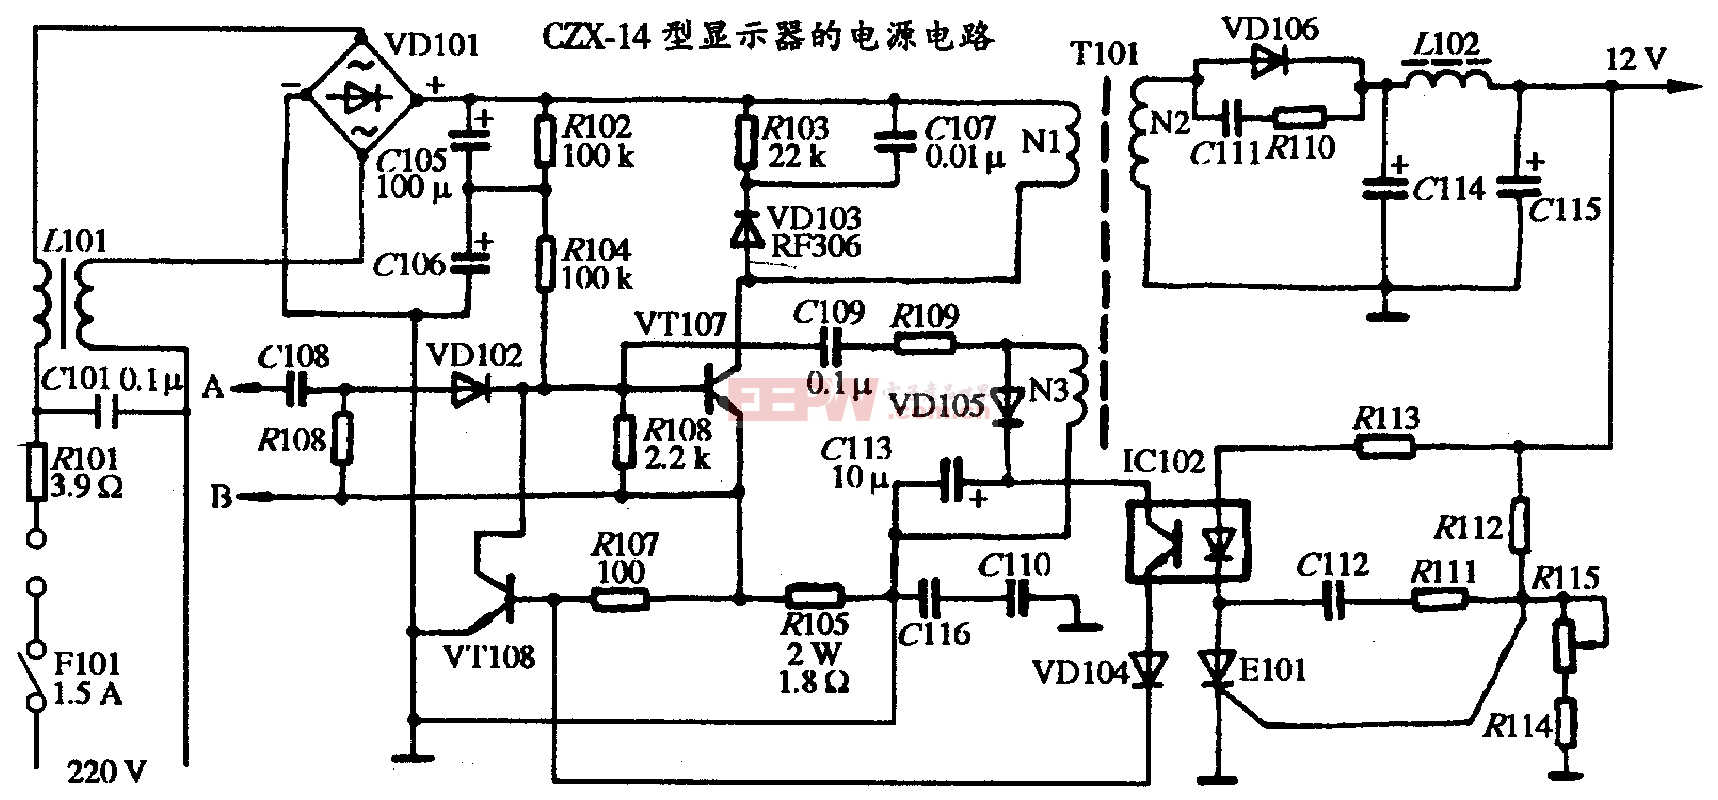 36、CZX-14型显示器的电源电路图